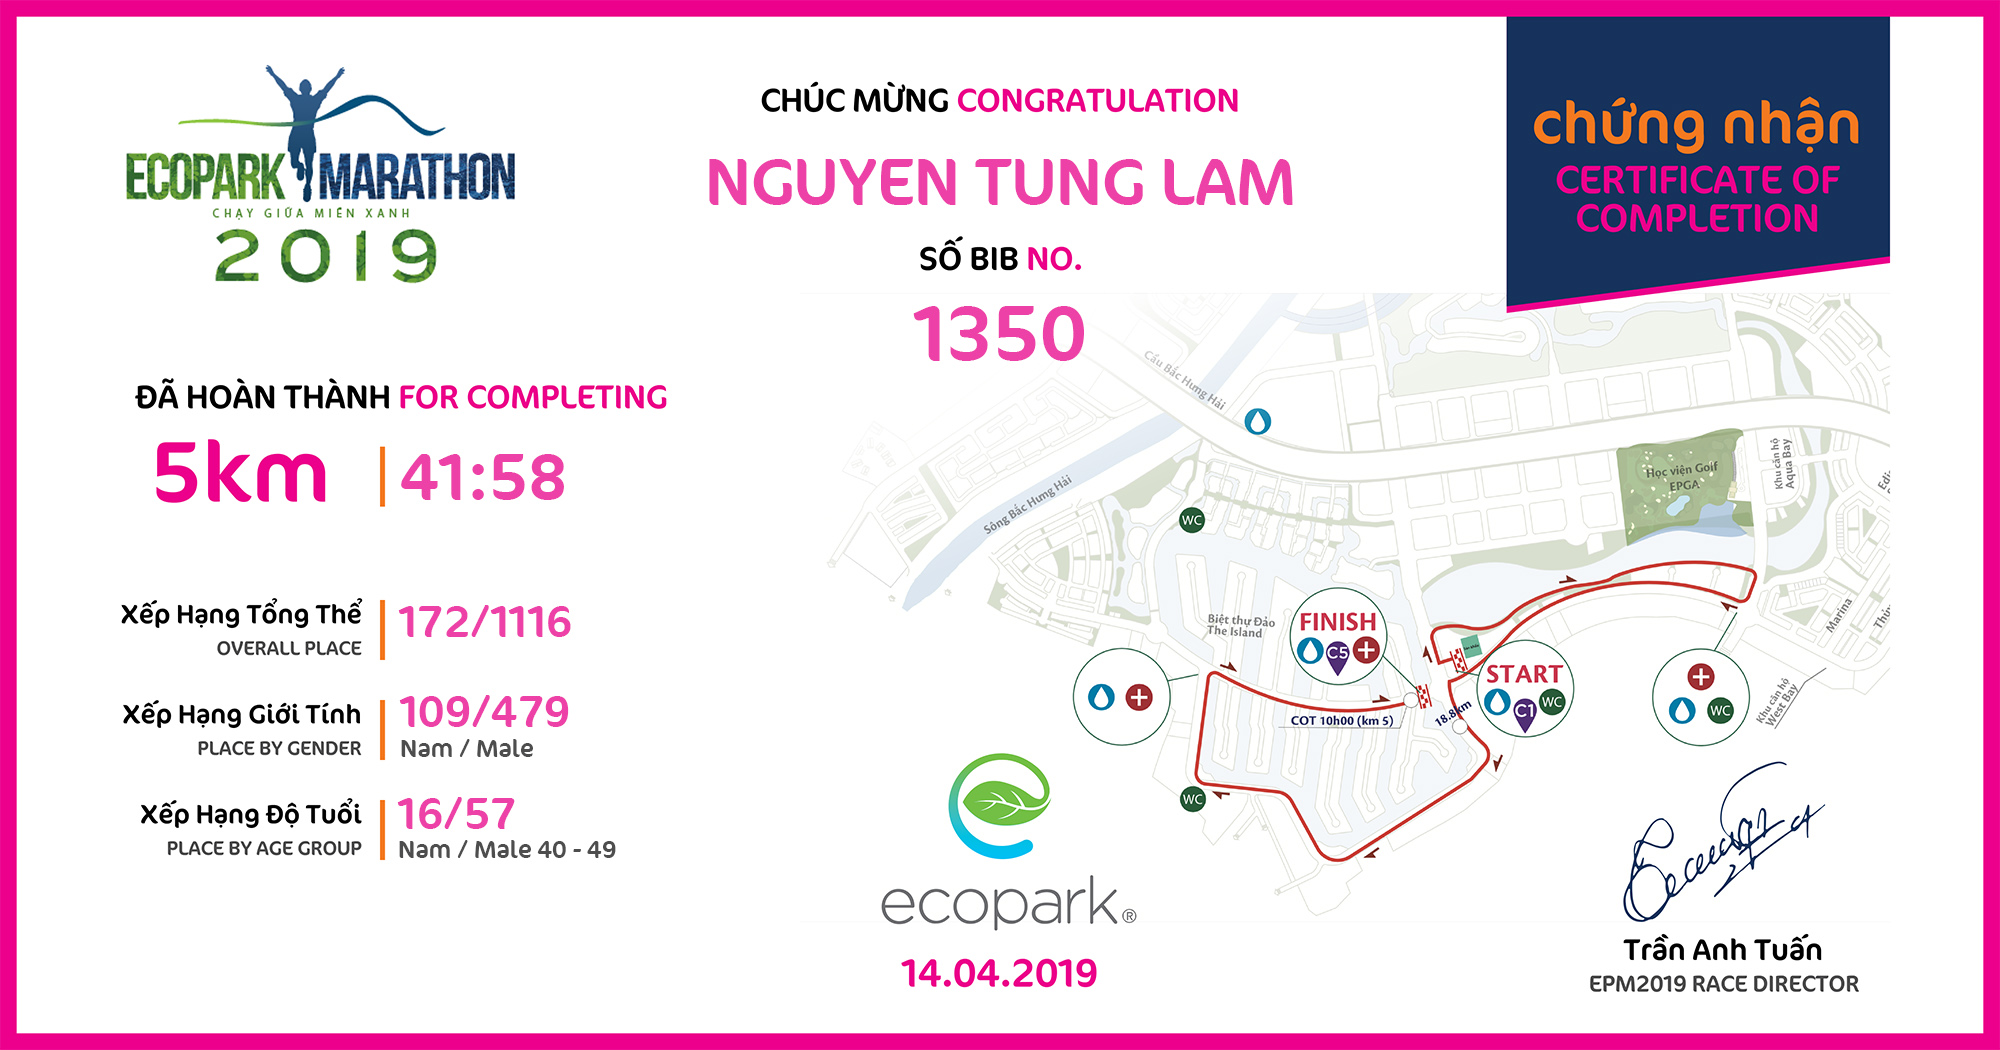 1350 - Nguyen Tung Lam